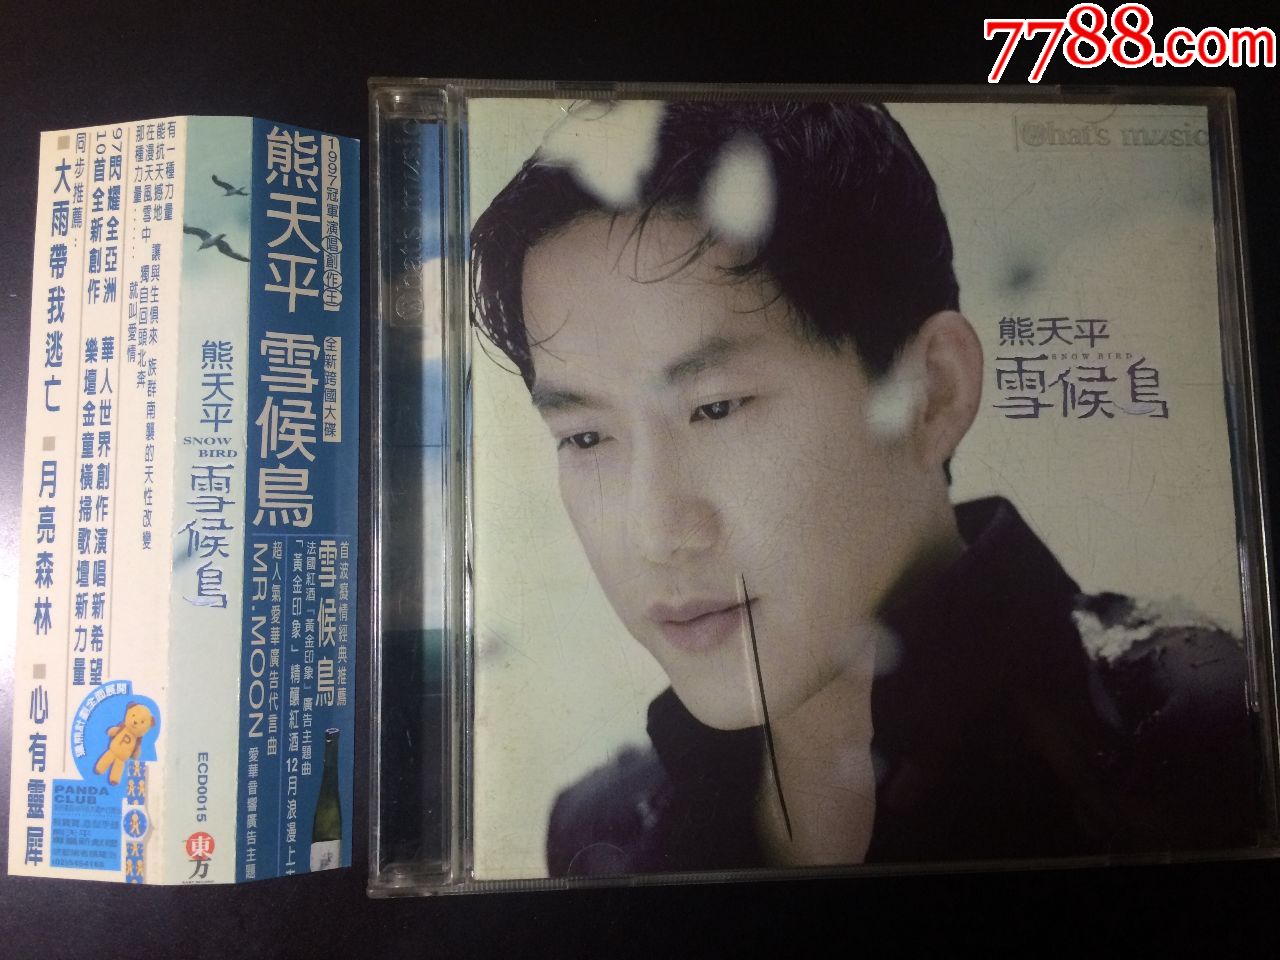 熊天平雪候鸟,台湾首版CD